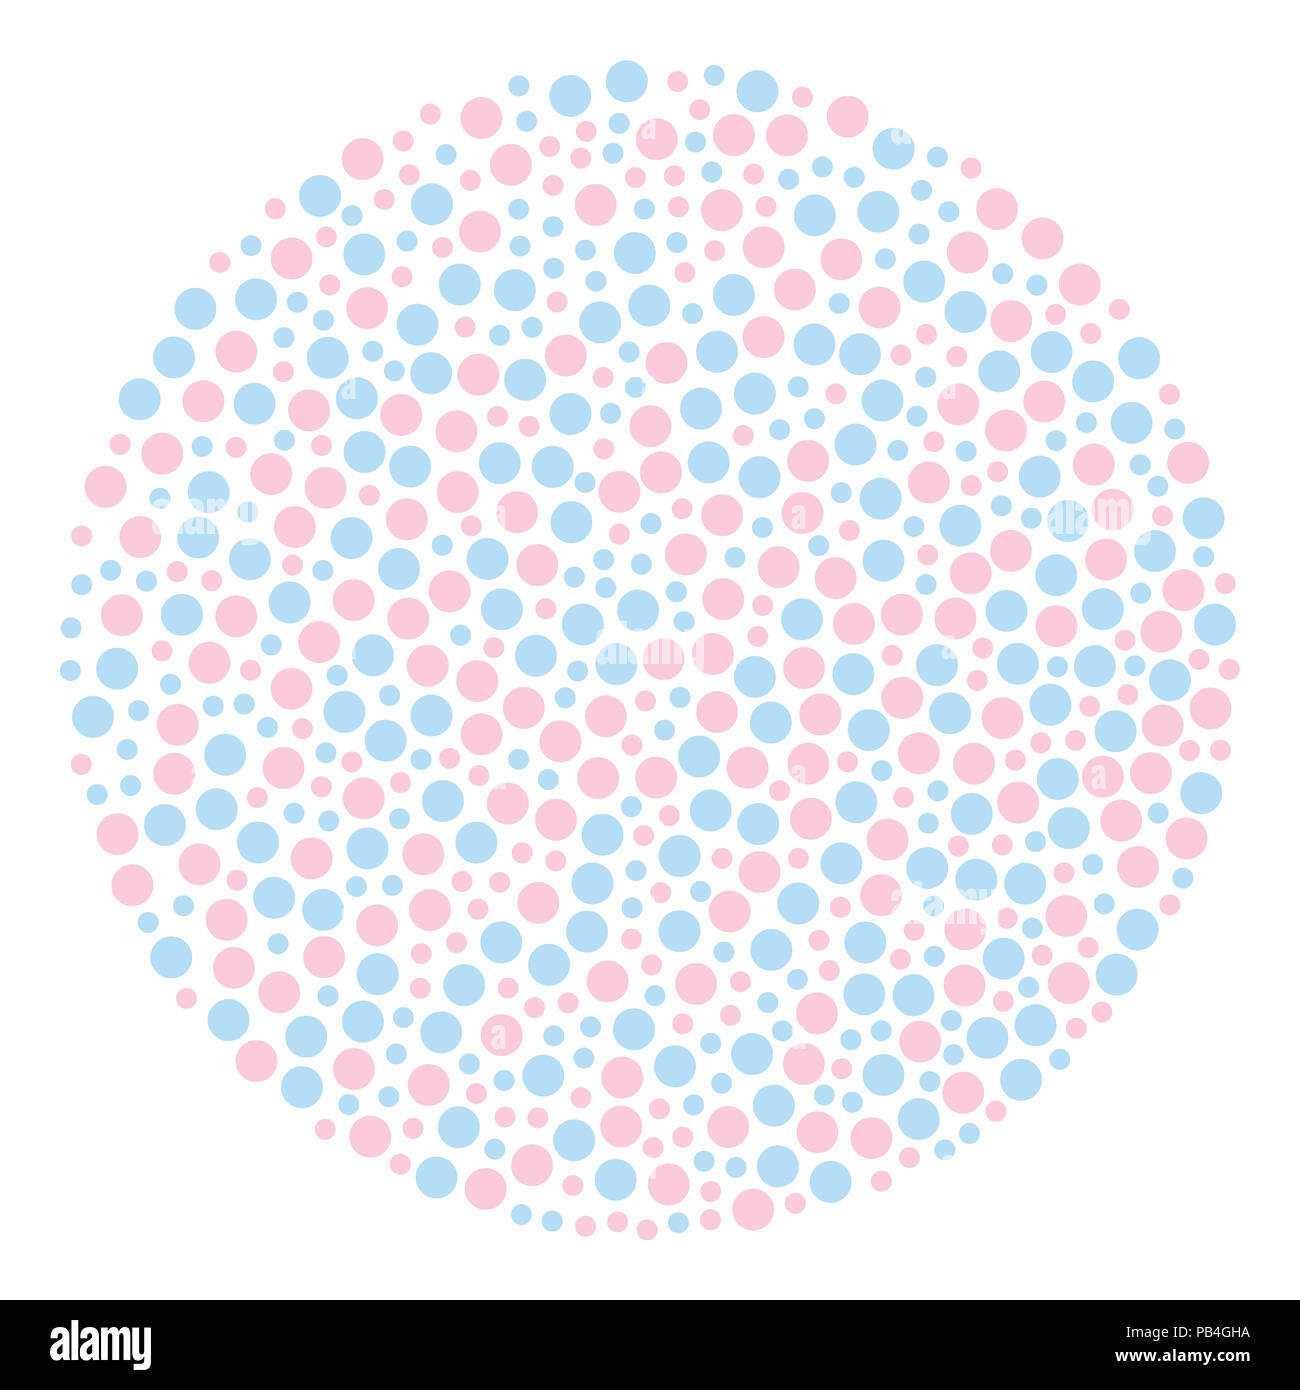 En arrière-plan en forme de cercle faite de points, coloré en bleu bébé et Bébé rose. Zone circulaire faite de petites taches de couleur placés au hasard. Zone tachetée. Banque D'Images